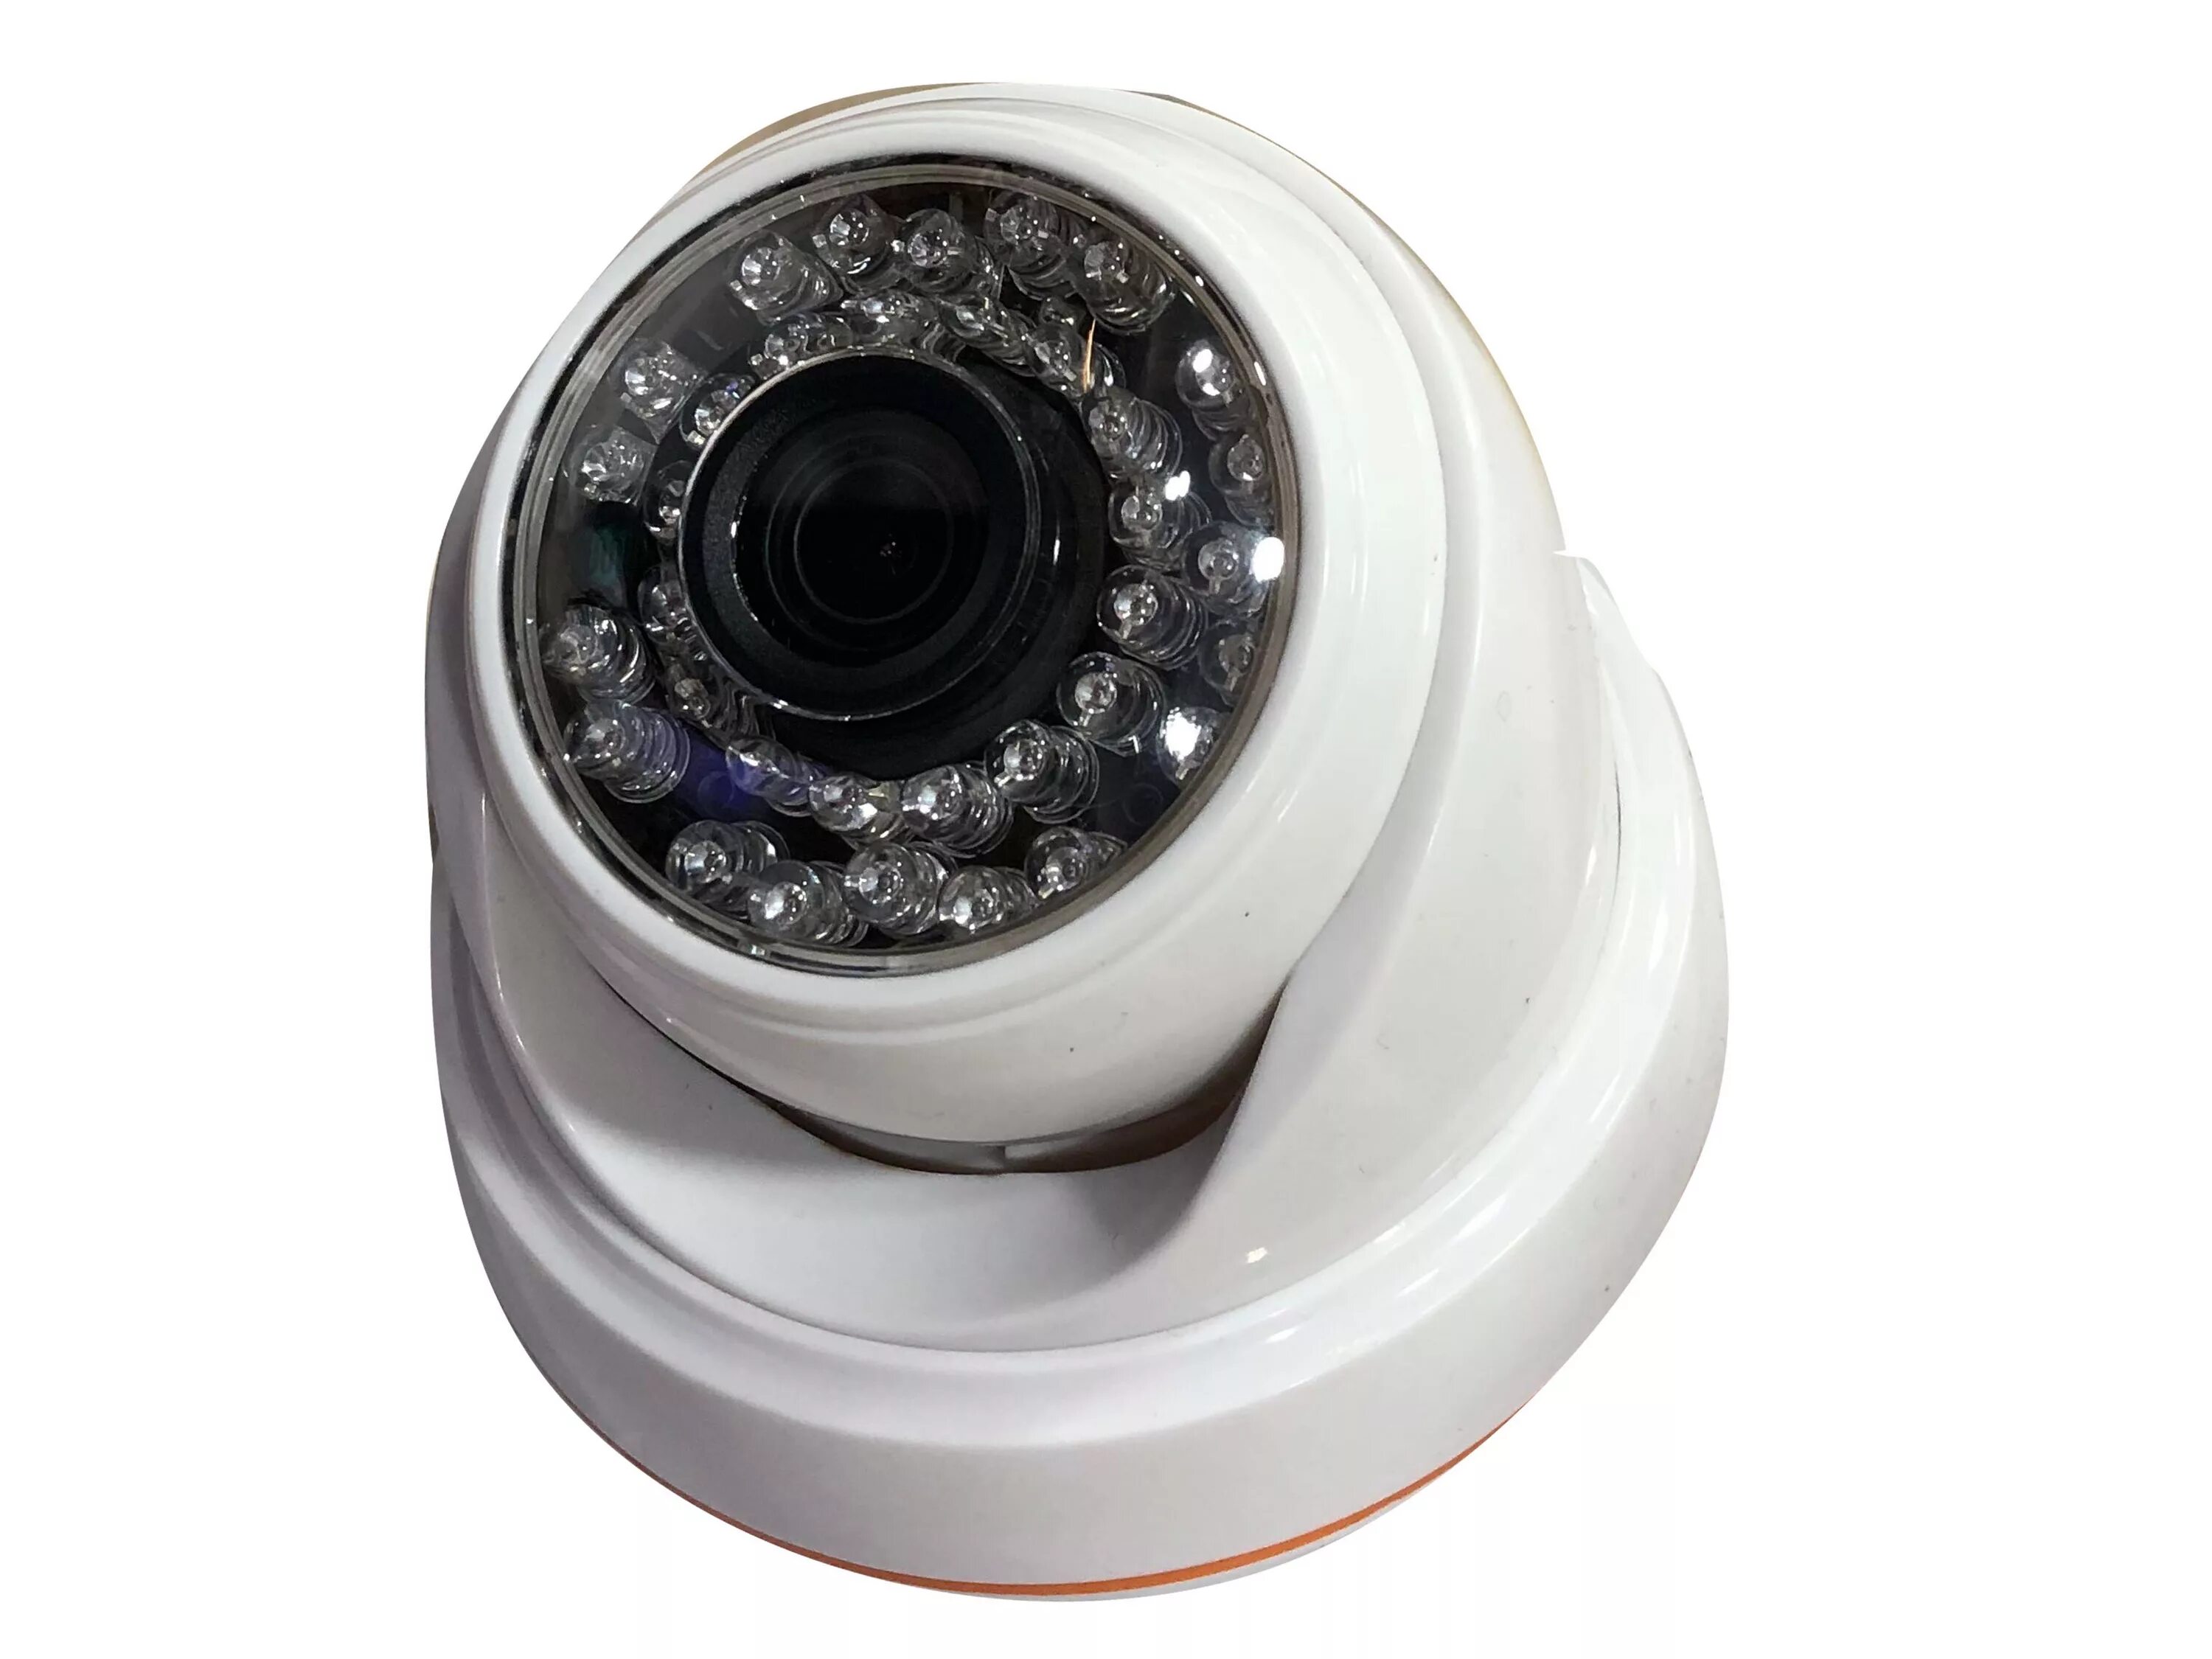 Купольная камера видеонаблюдения HIWATCH. Камера zjuxin 5mp AHD камера с Sony датчик. Ts4001 видеокамера. AHD-D1.0 купольная AHD камера, 720p, f=3.6мм.